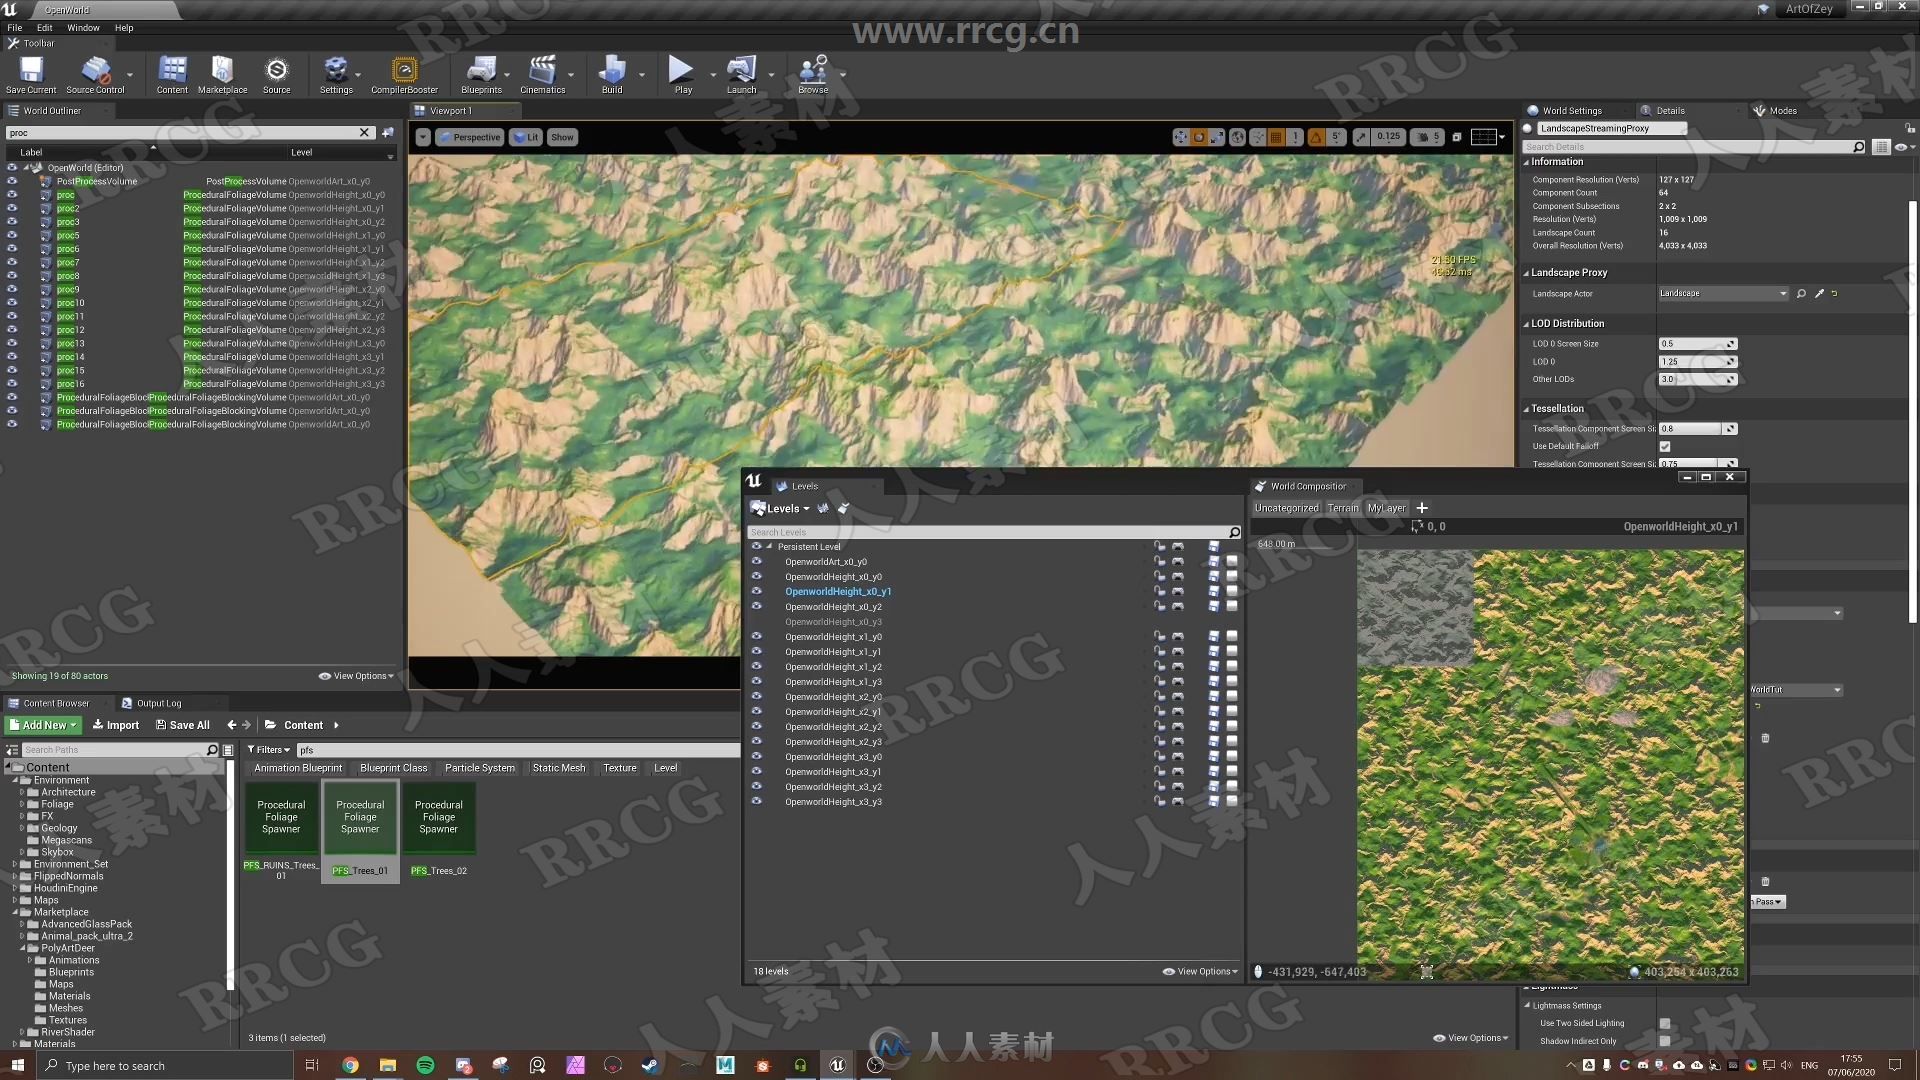 UE4游戏引擎开发世界地图制作视频教程